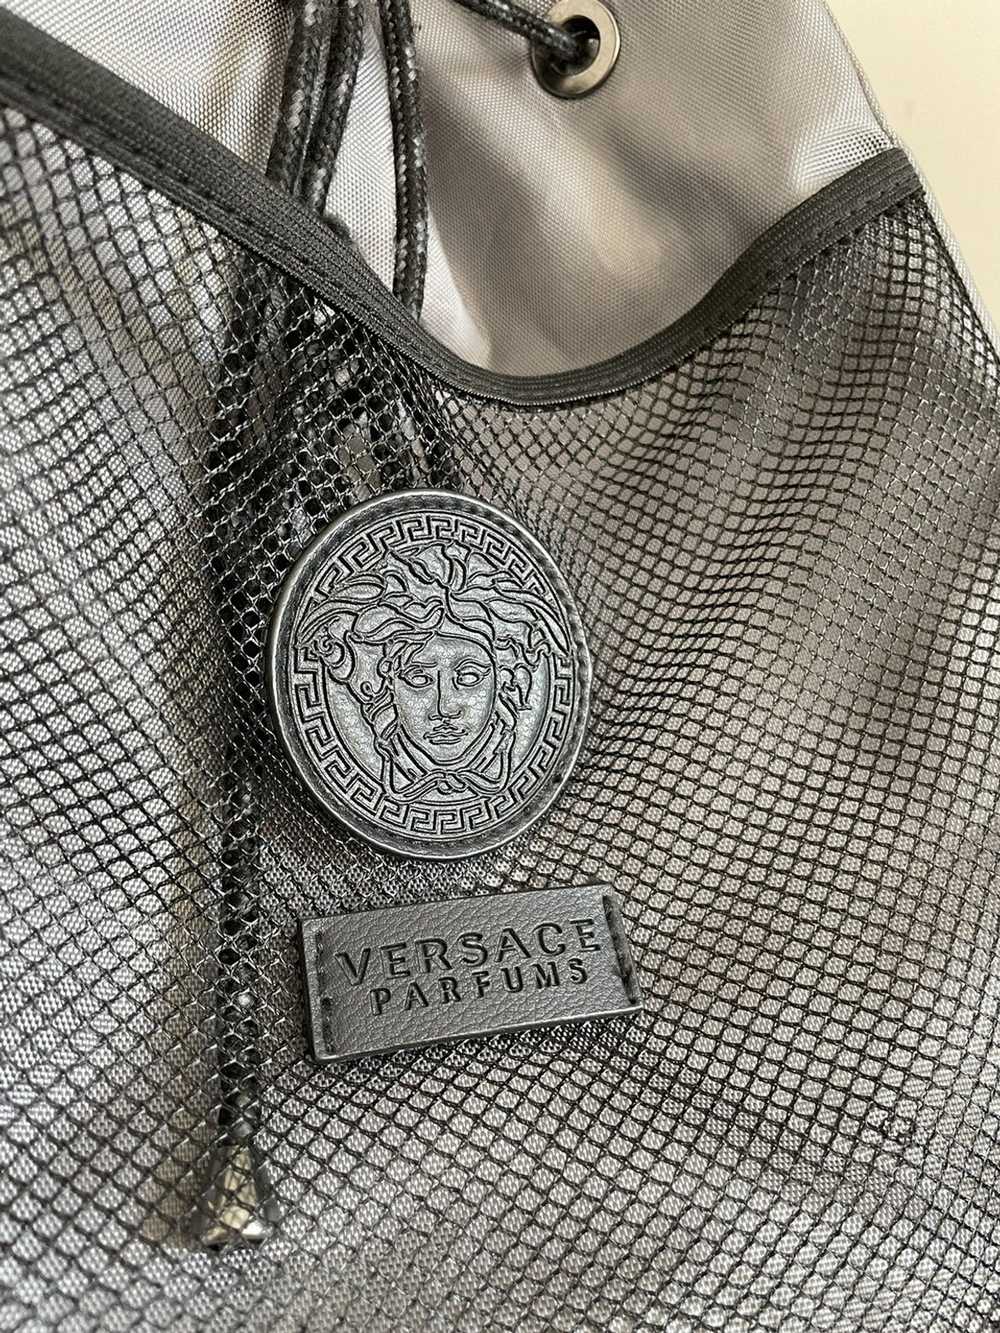 Versace Versace Parfums Backpack - image 2